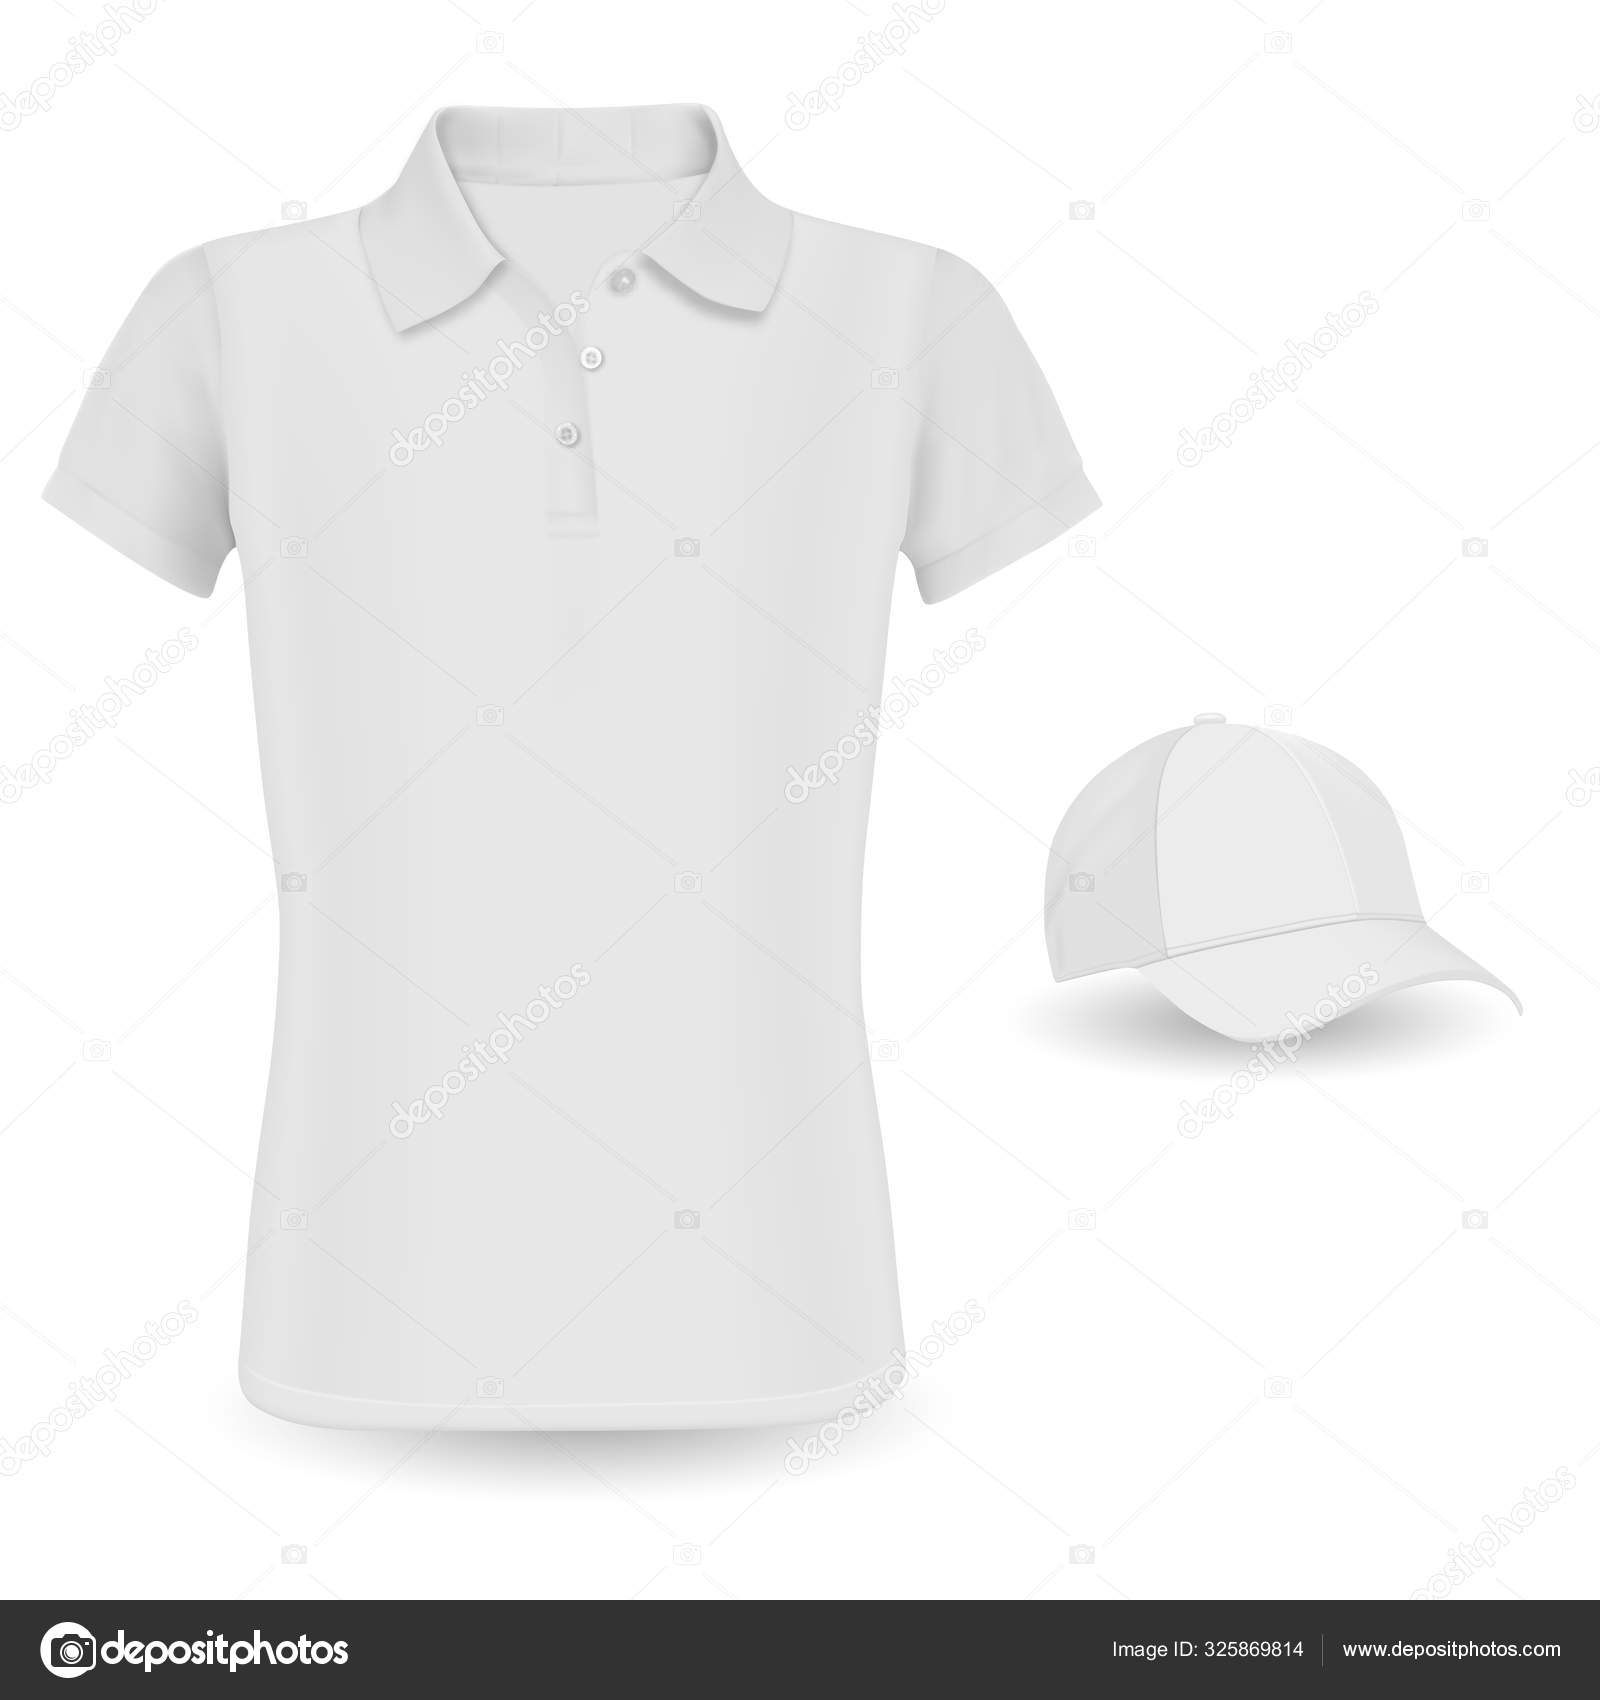 Polo Shirt Mockup. Vector Tshirt and Baseball Cap Stock Vector Image by ...